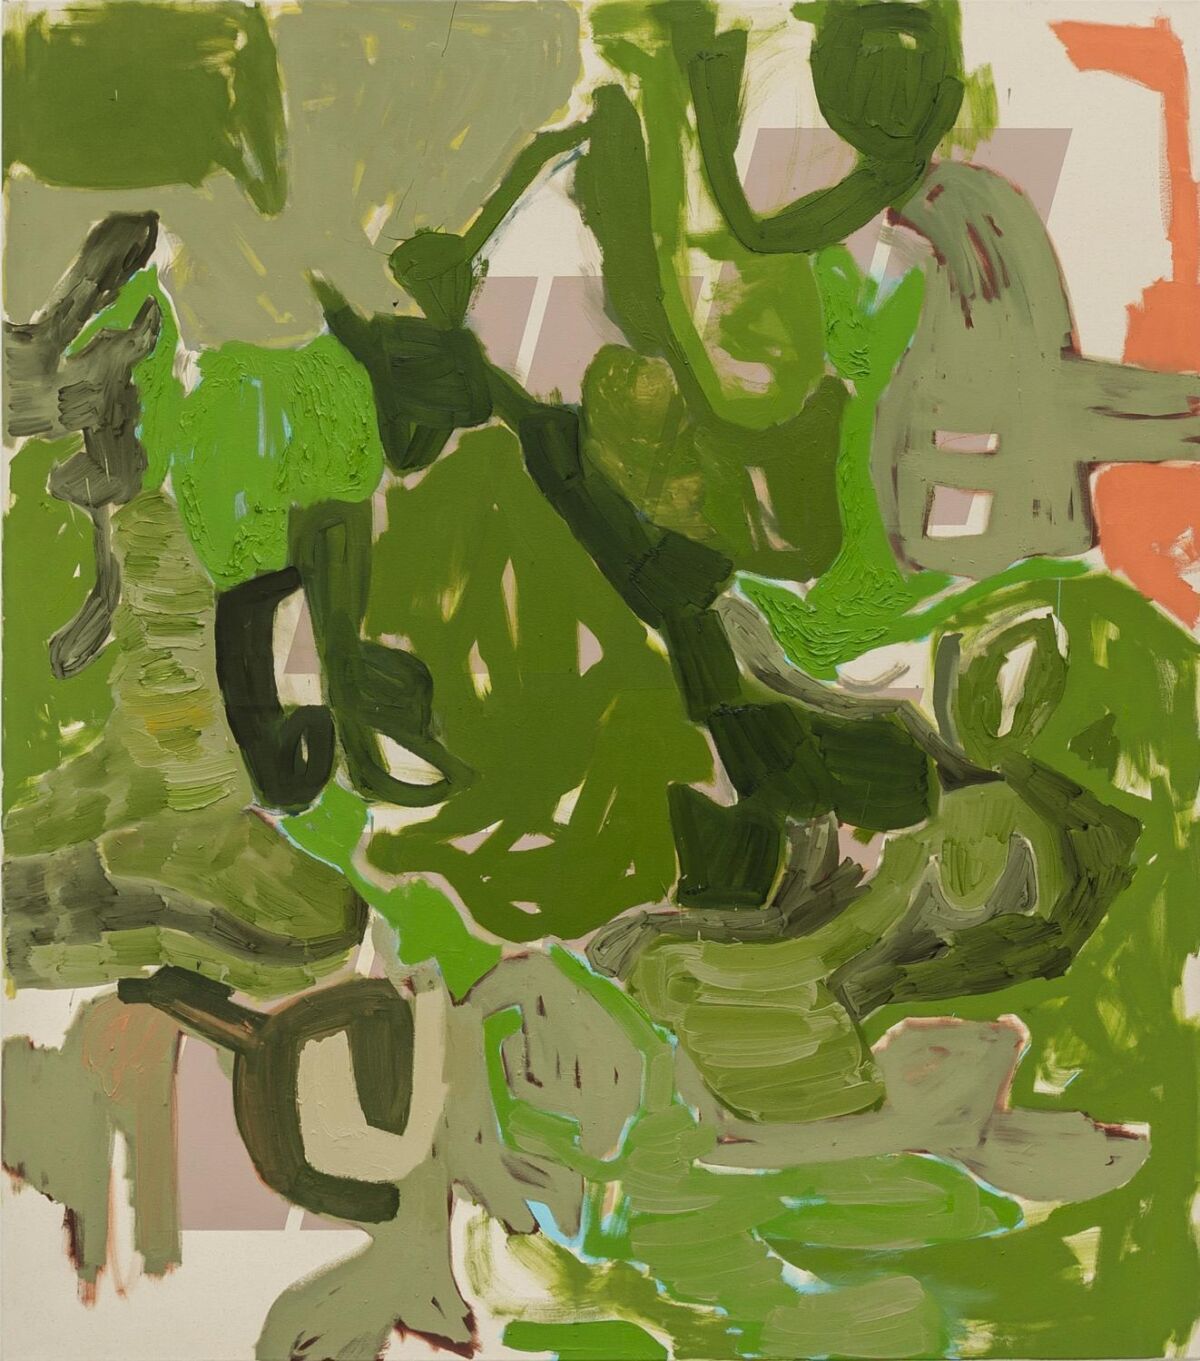 Abstrakt maleri i grønt, brunt, beige og fersken. Maleri.